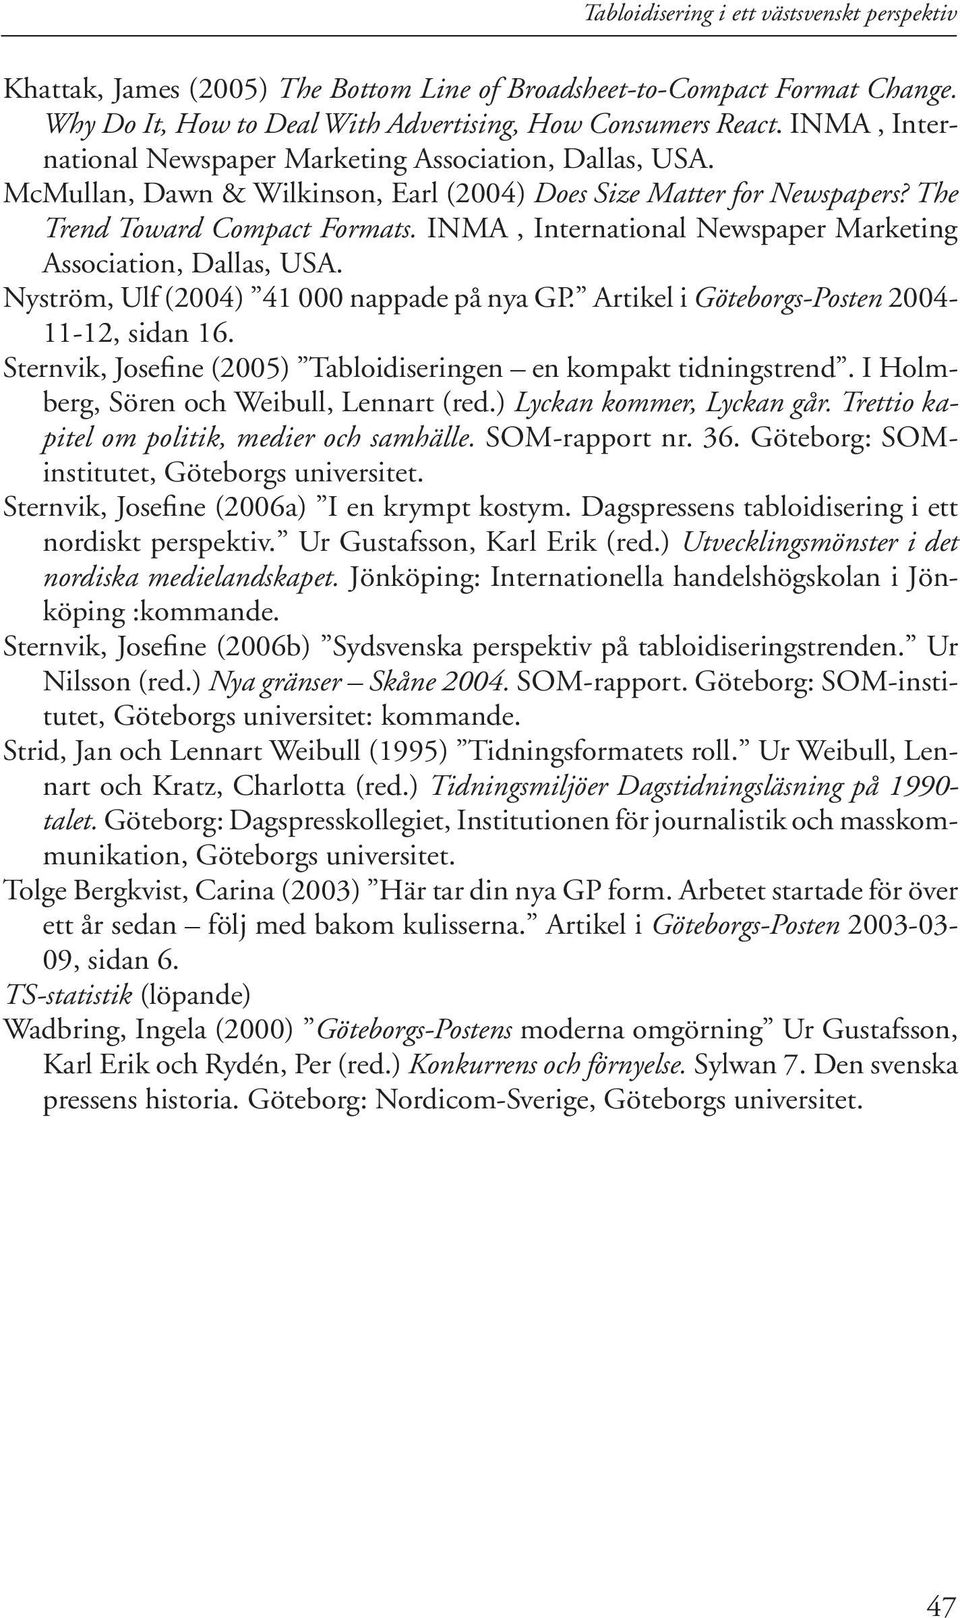 INMA, International Newspaper Marketing Association, Dallas, USA. Nyström, Ulf (2004) 41 000 nappade på nya GP. Artikel i Göteborgs-Posten 2004-11-12, sidan 16.